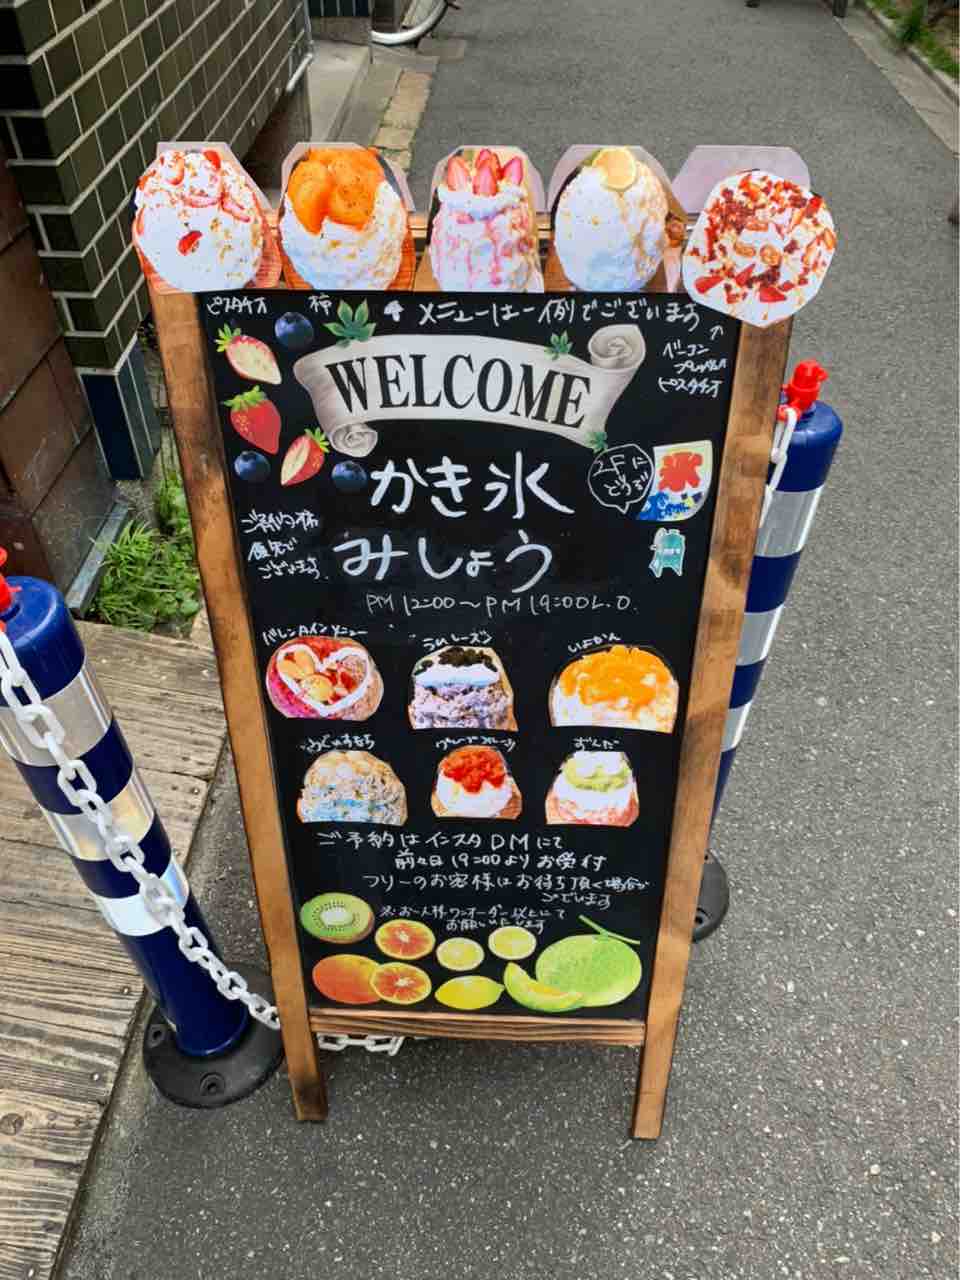 大阪かき氷 中崎町カフェ リピーターが続出する かき氷 みしょう で迫力満点かき氷をいただく 大阪つーしん 大阪市の地域情報サイト